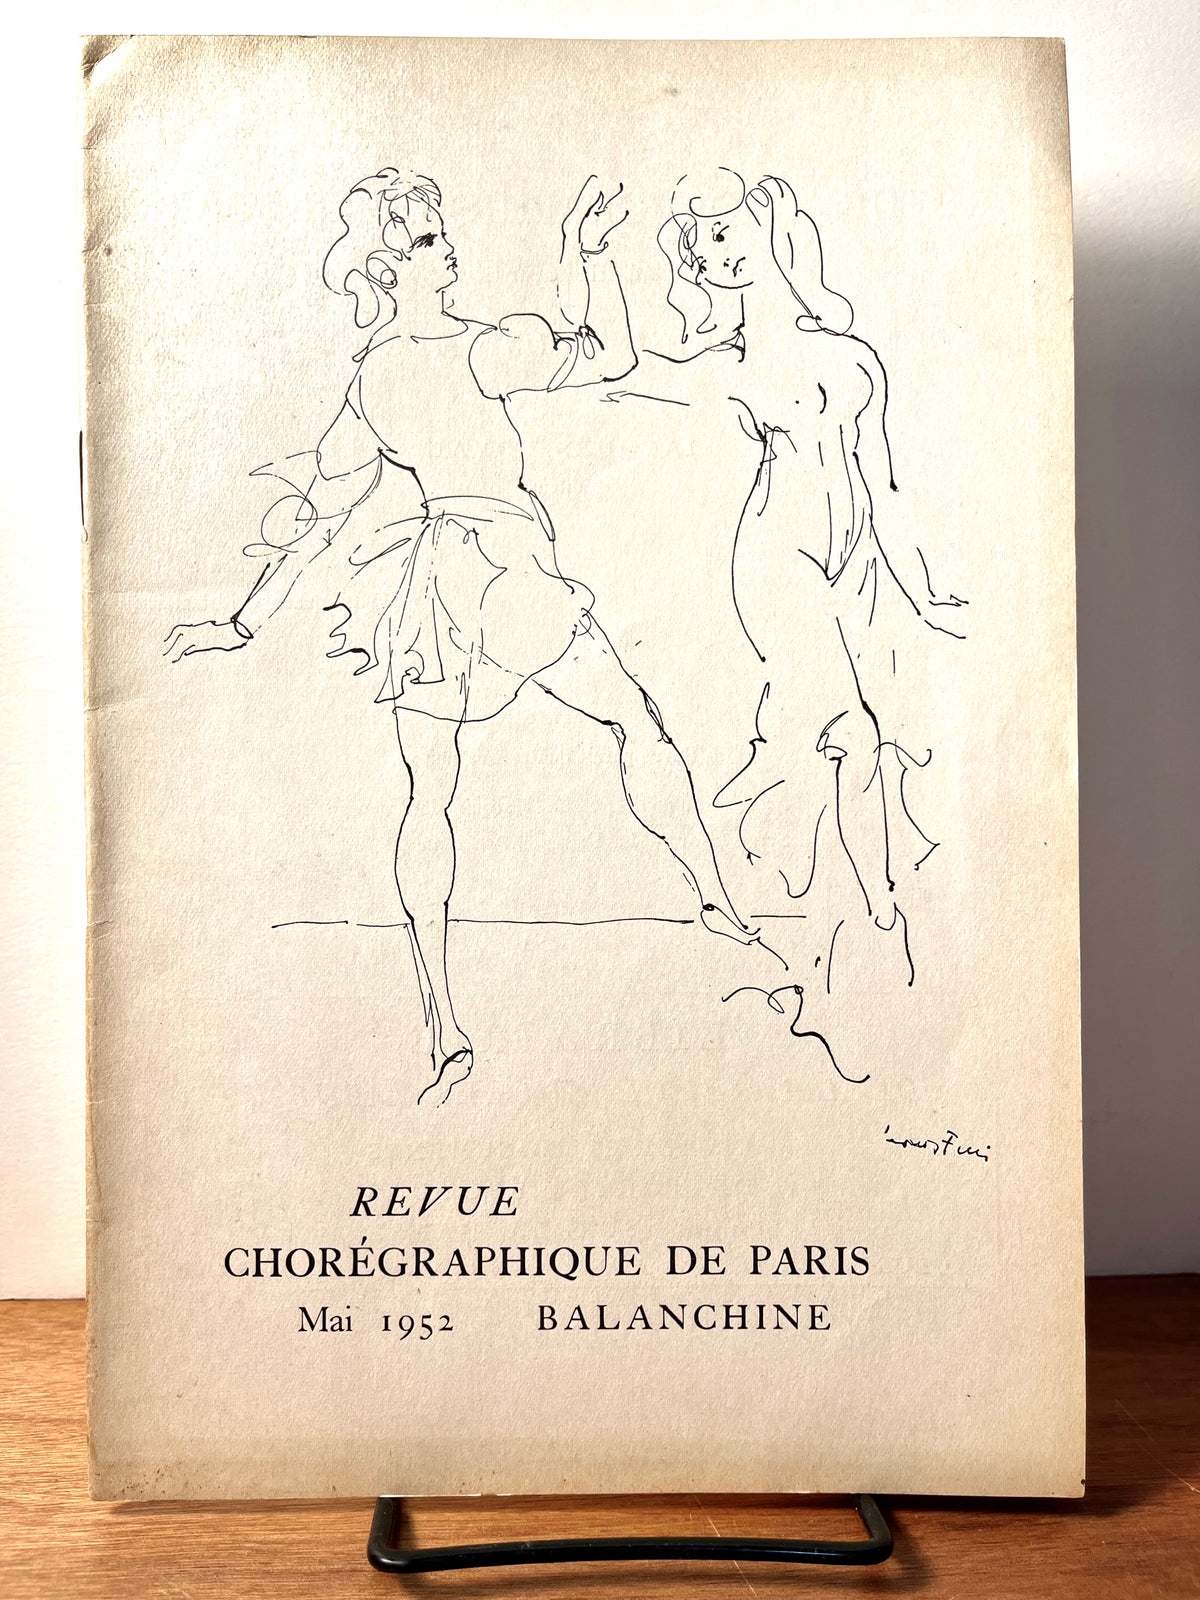 Hommage a Balanchine: Revue Choregraphique de Paris 1952, illust. Leonor Fini